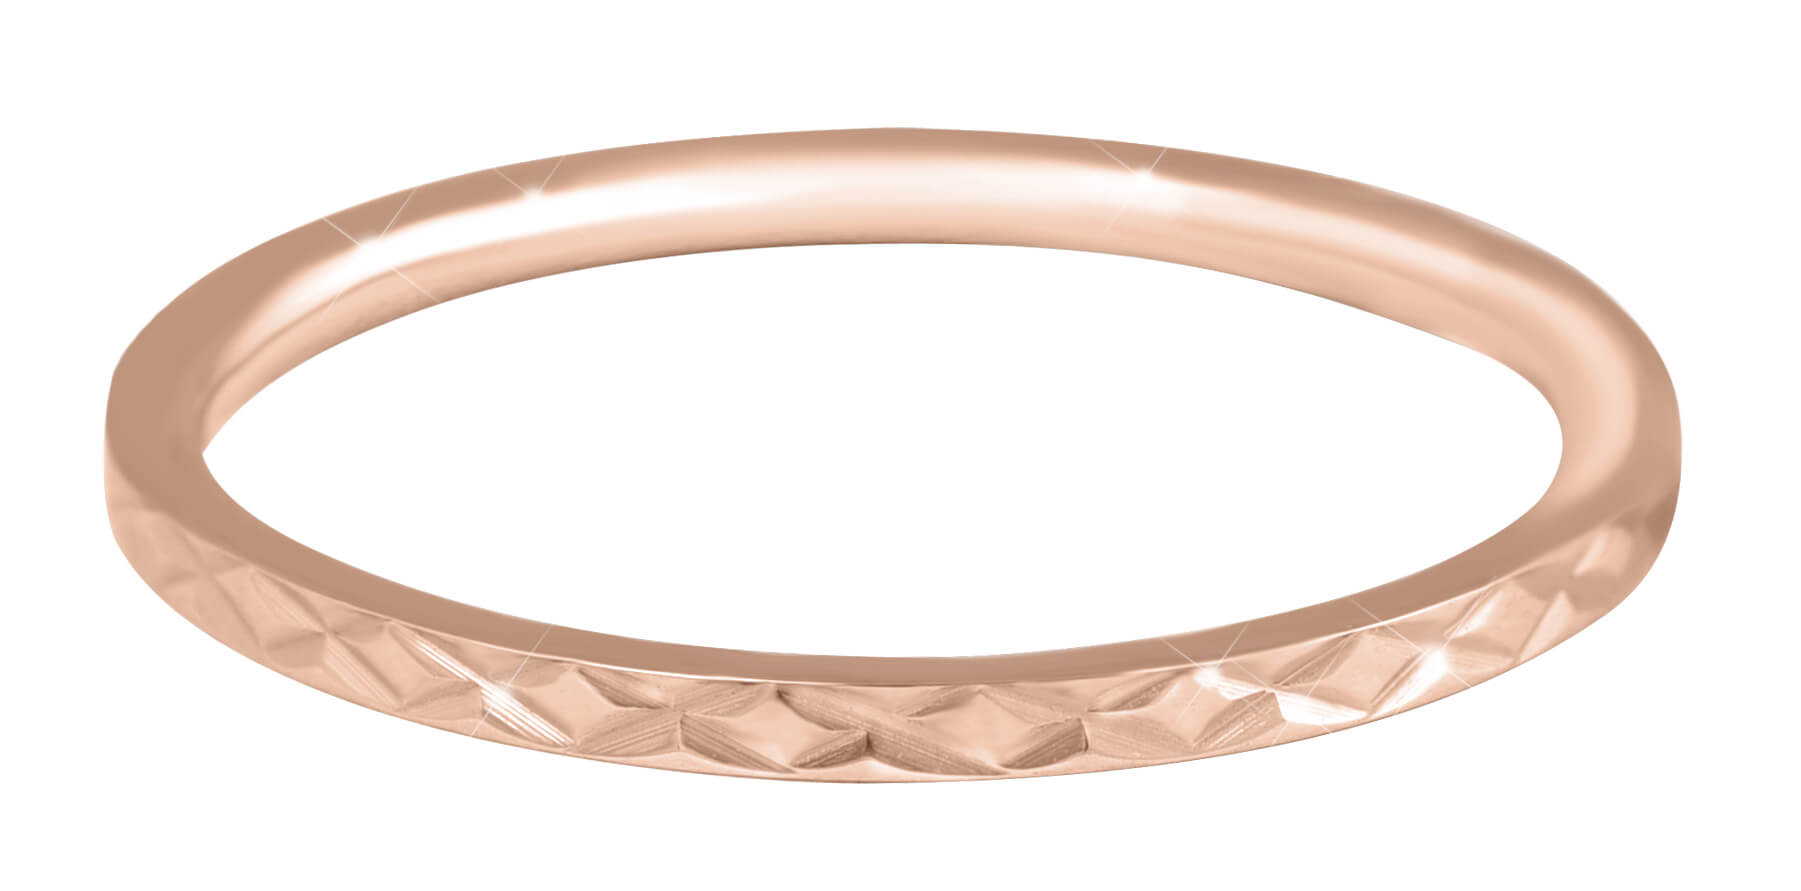 Troli Pozlacený minimalistický prsten z oceli s jemným vzorem Rose Gold 49 mm